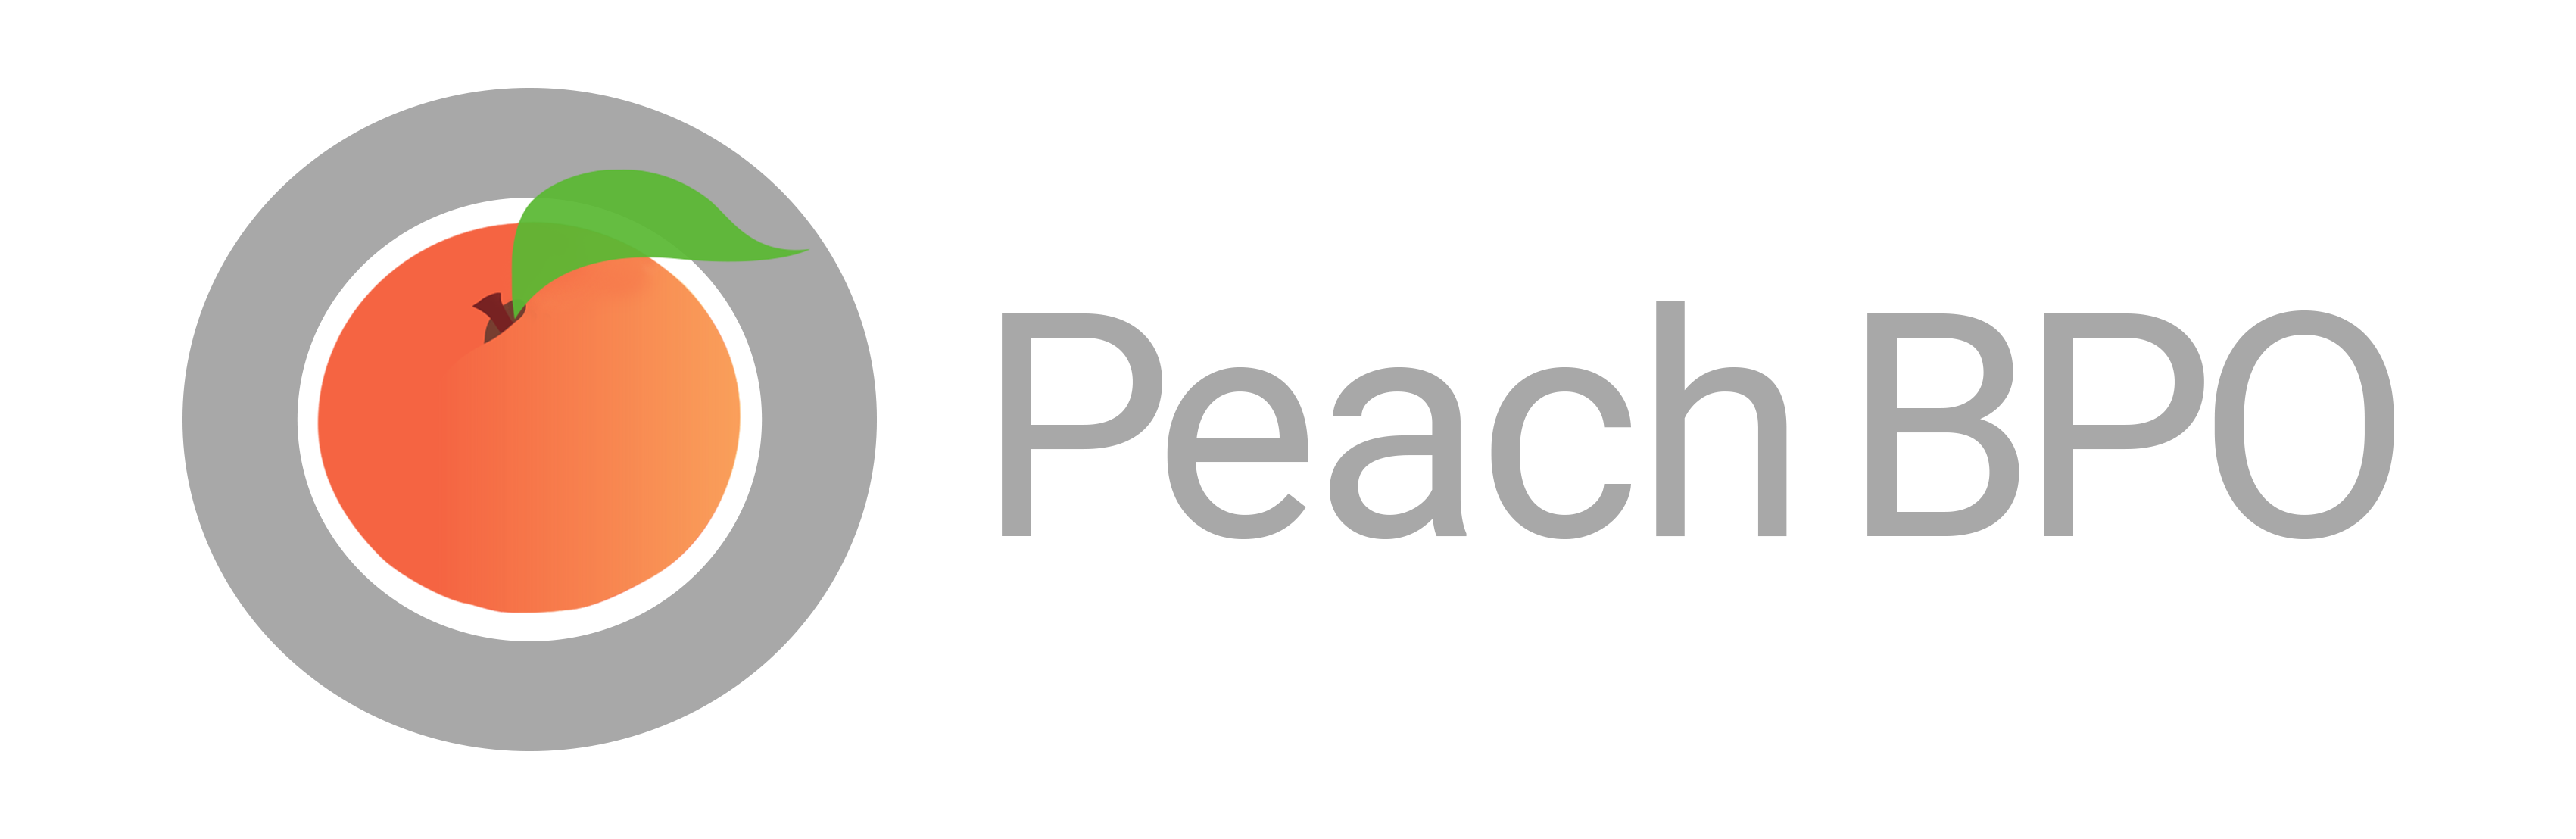 Peach BPO